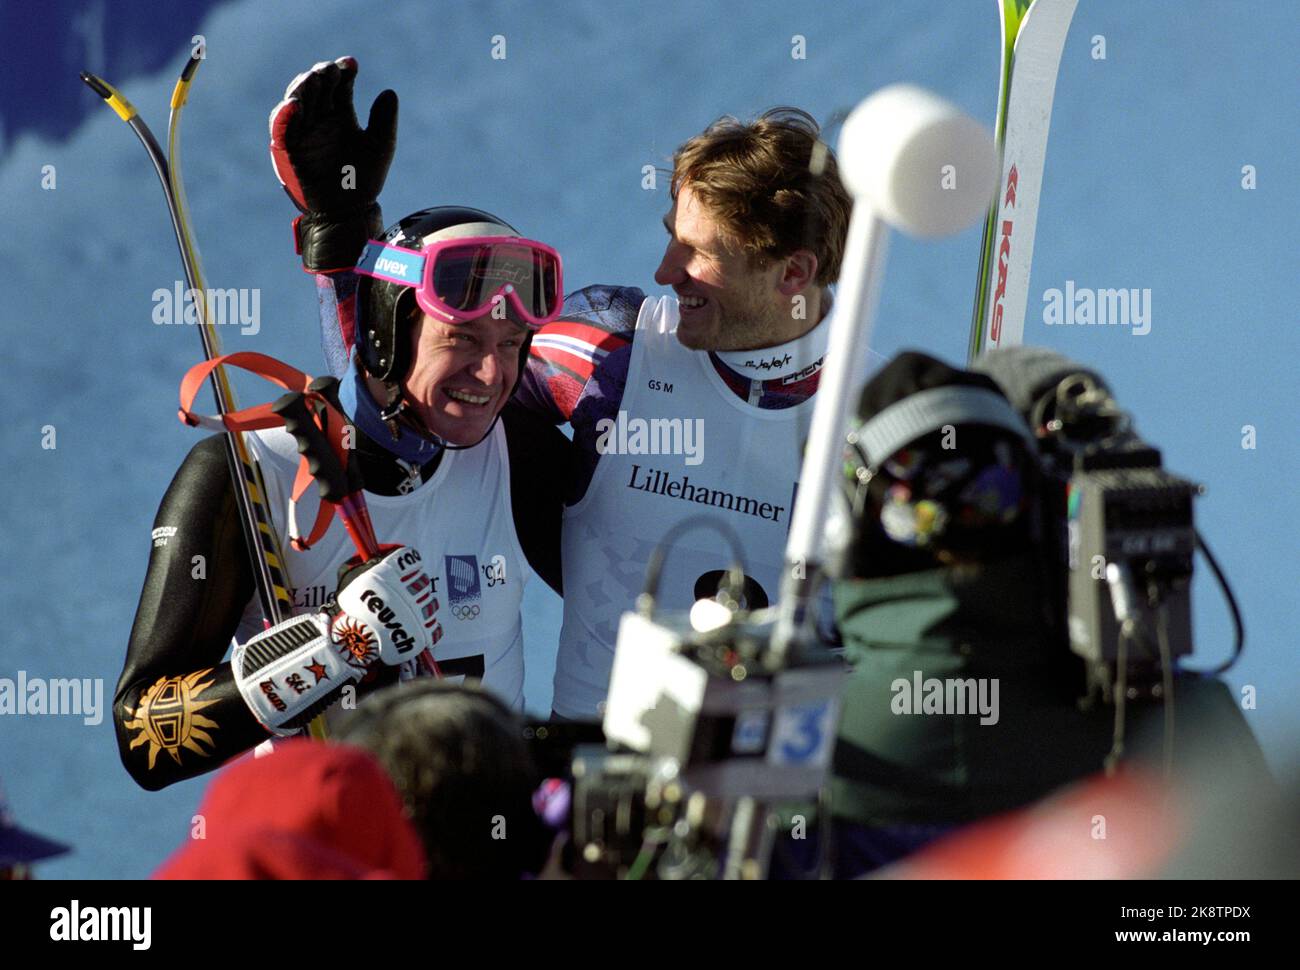 Hafjell 19940223. Olimpiadi invernali a Lillehammer. Grande slalom in Hafjell. Il vincitore Markus Wasmeier (Ger) si congratula con Jan Einar Thorsen, che si aggiudica il 4th° posto. Foto: Pål Hansen / NTB Foto Stock